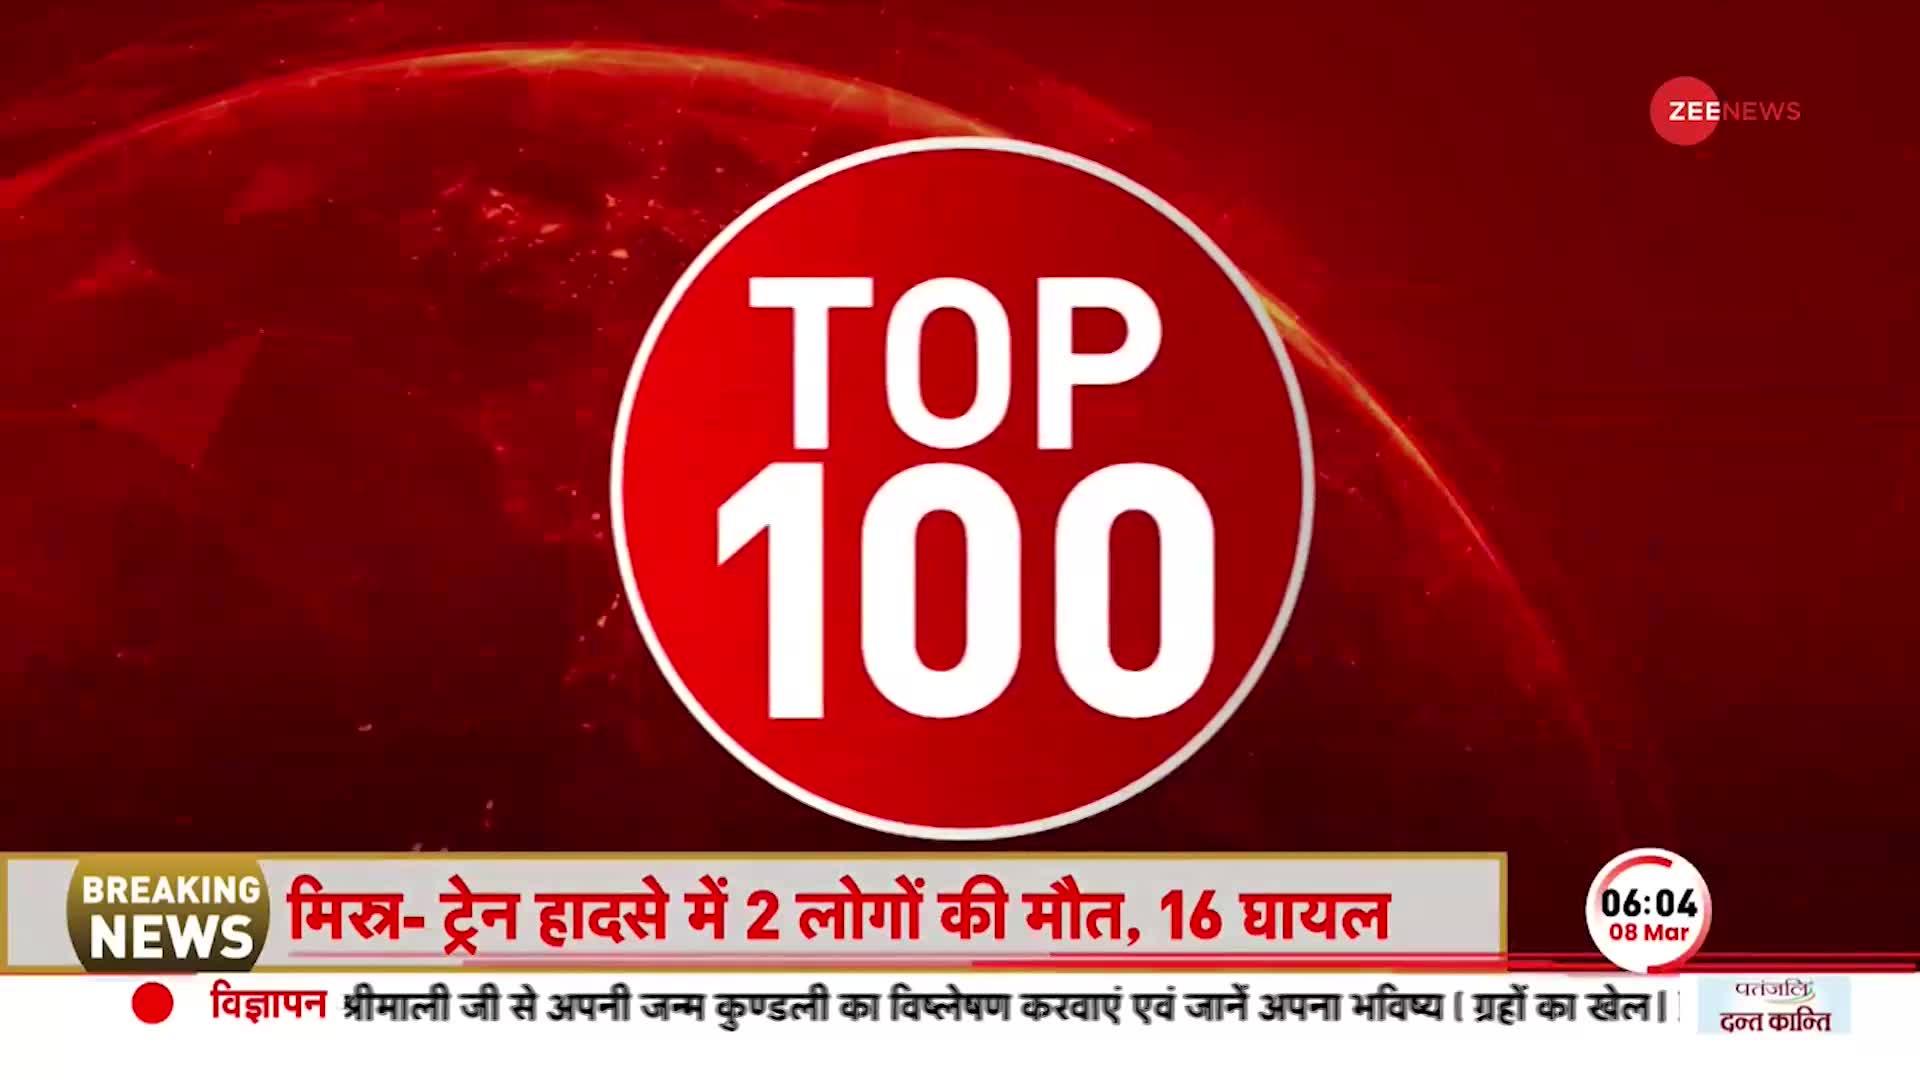 Top 100: आज Tripura में लगातार दूसरी बार BJP सरकार, Manik Saha लेंगे CM पद की शपथ